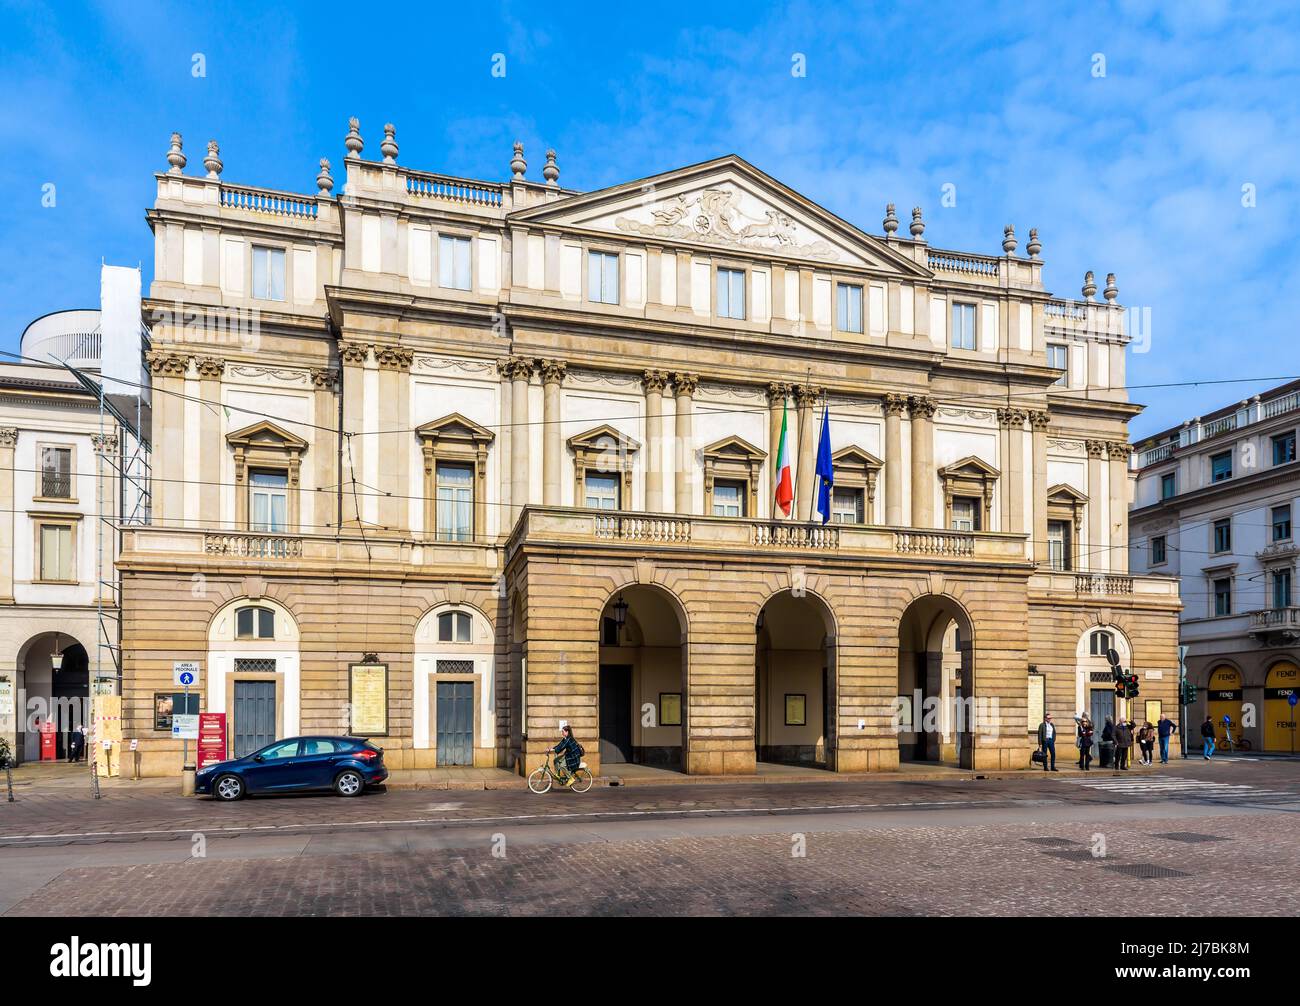 Vista general de la fachada de la ópera de La Scala (nombre completo Teatro alla Scala) en Milán, Italia. Foto de stock